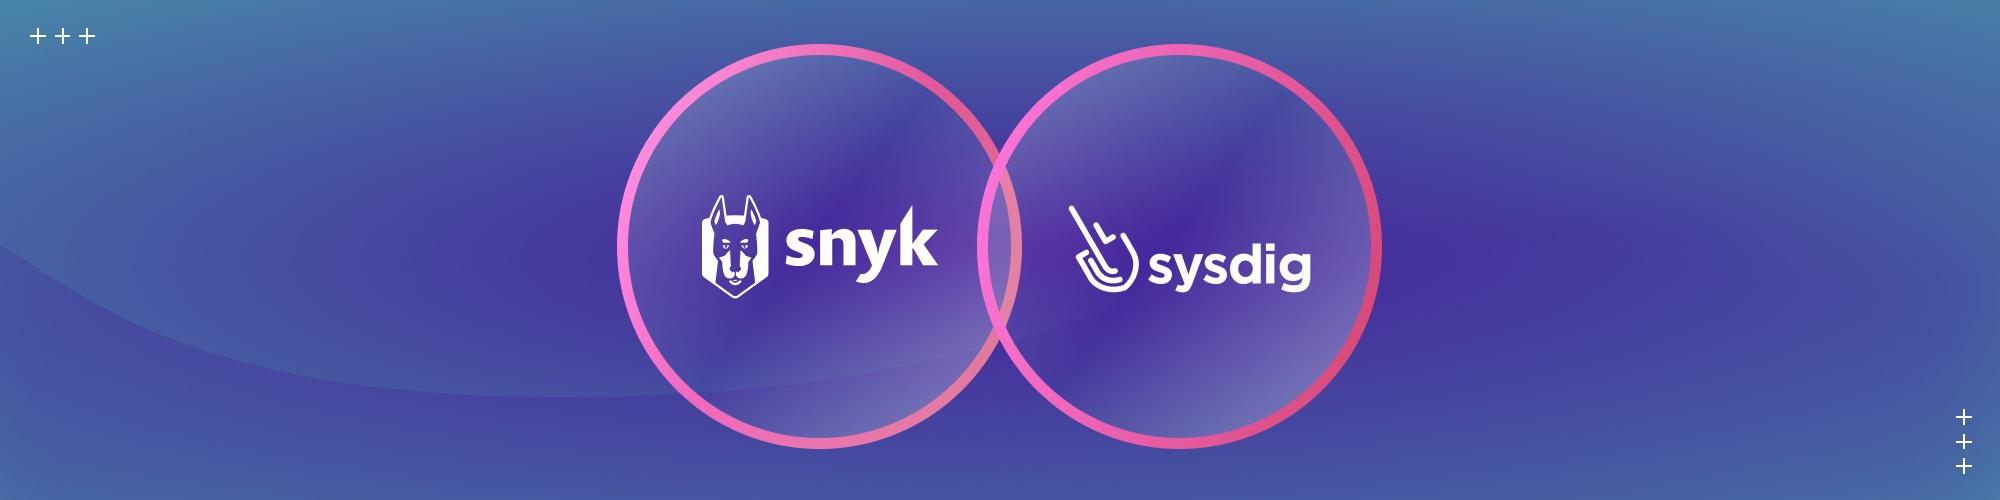 wordpress-sync/hero-snyk-sysdig